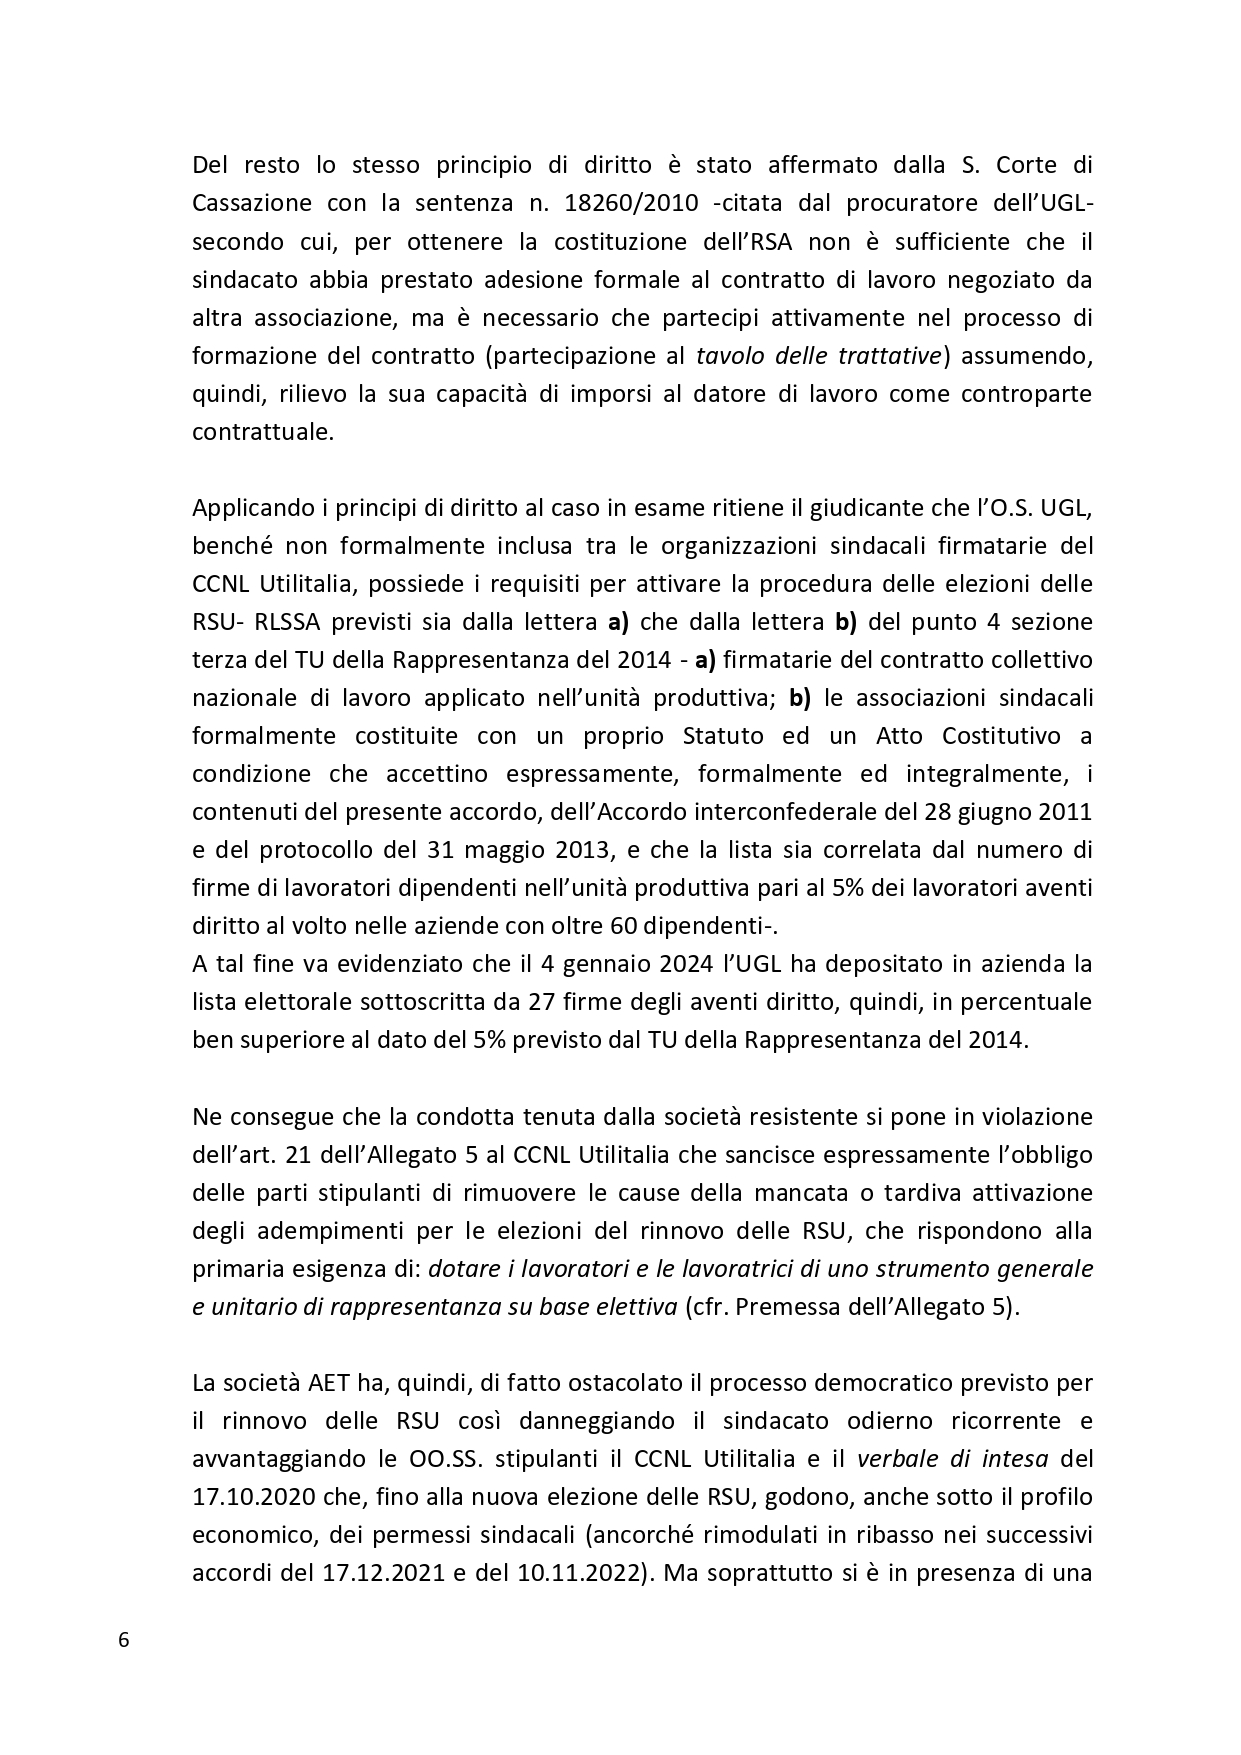 Decreto UGL Ambiente 1 page 0006